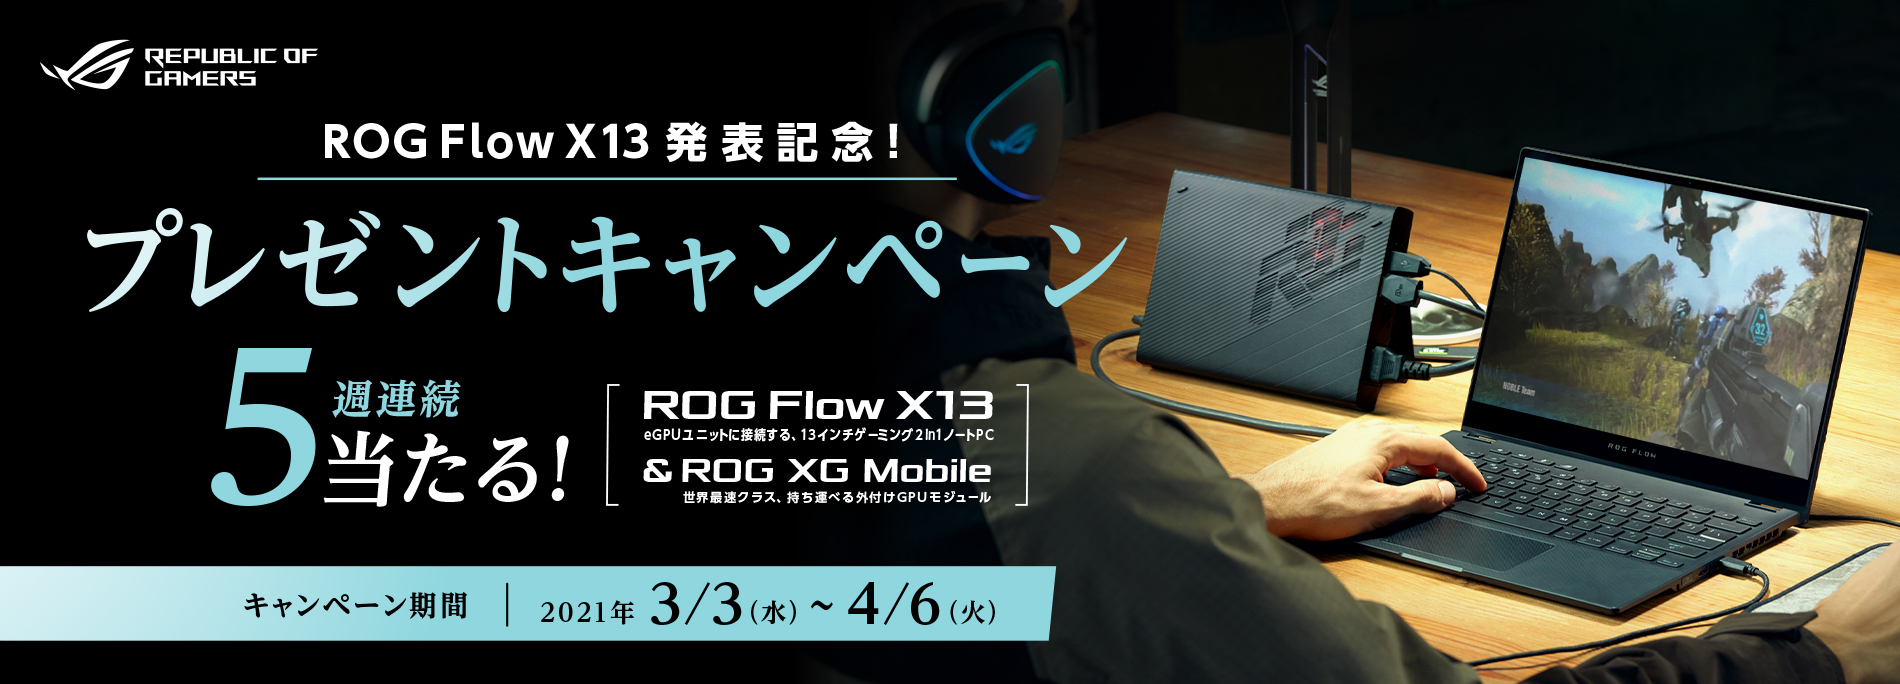 ROG Flow X13発表記念!プレゼントキャンペーン